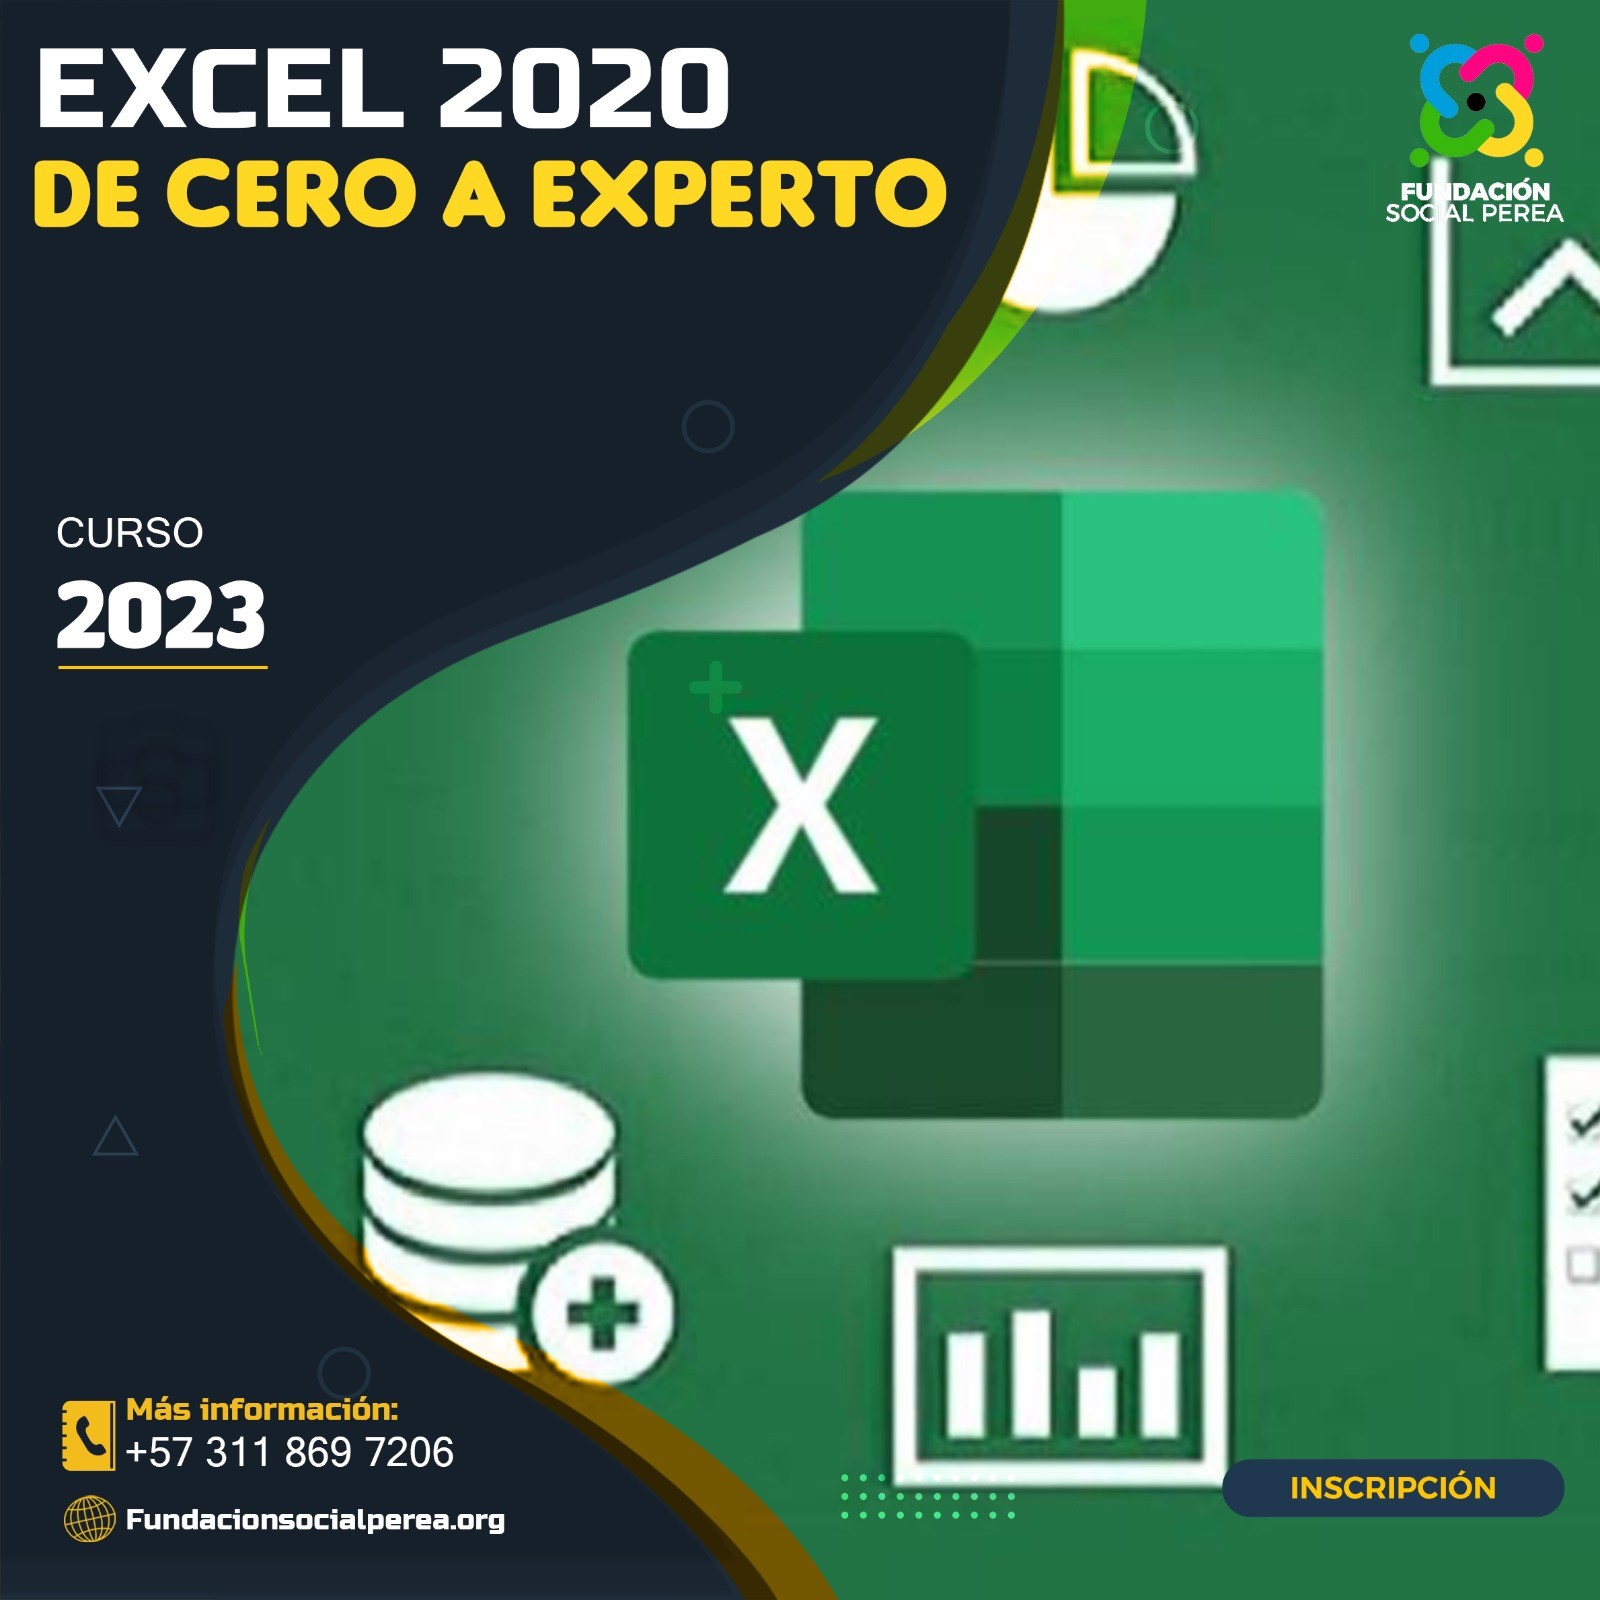 Excel 2020 de Cero a Experto